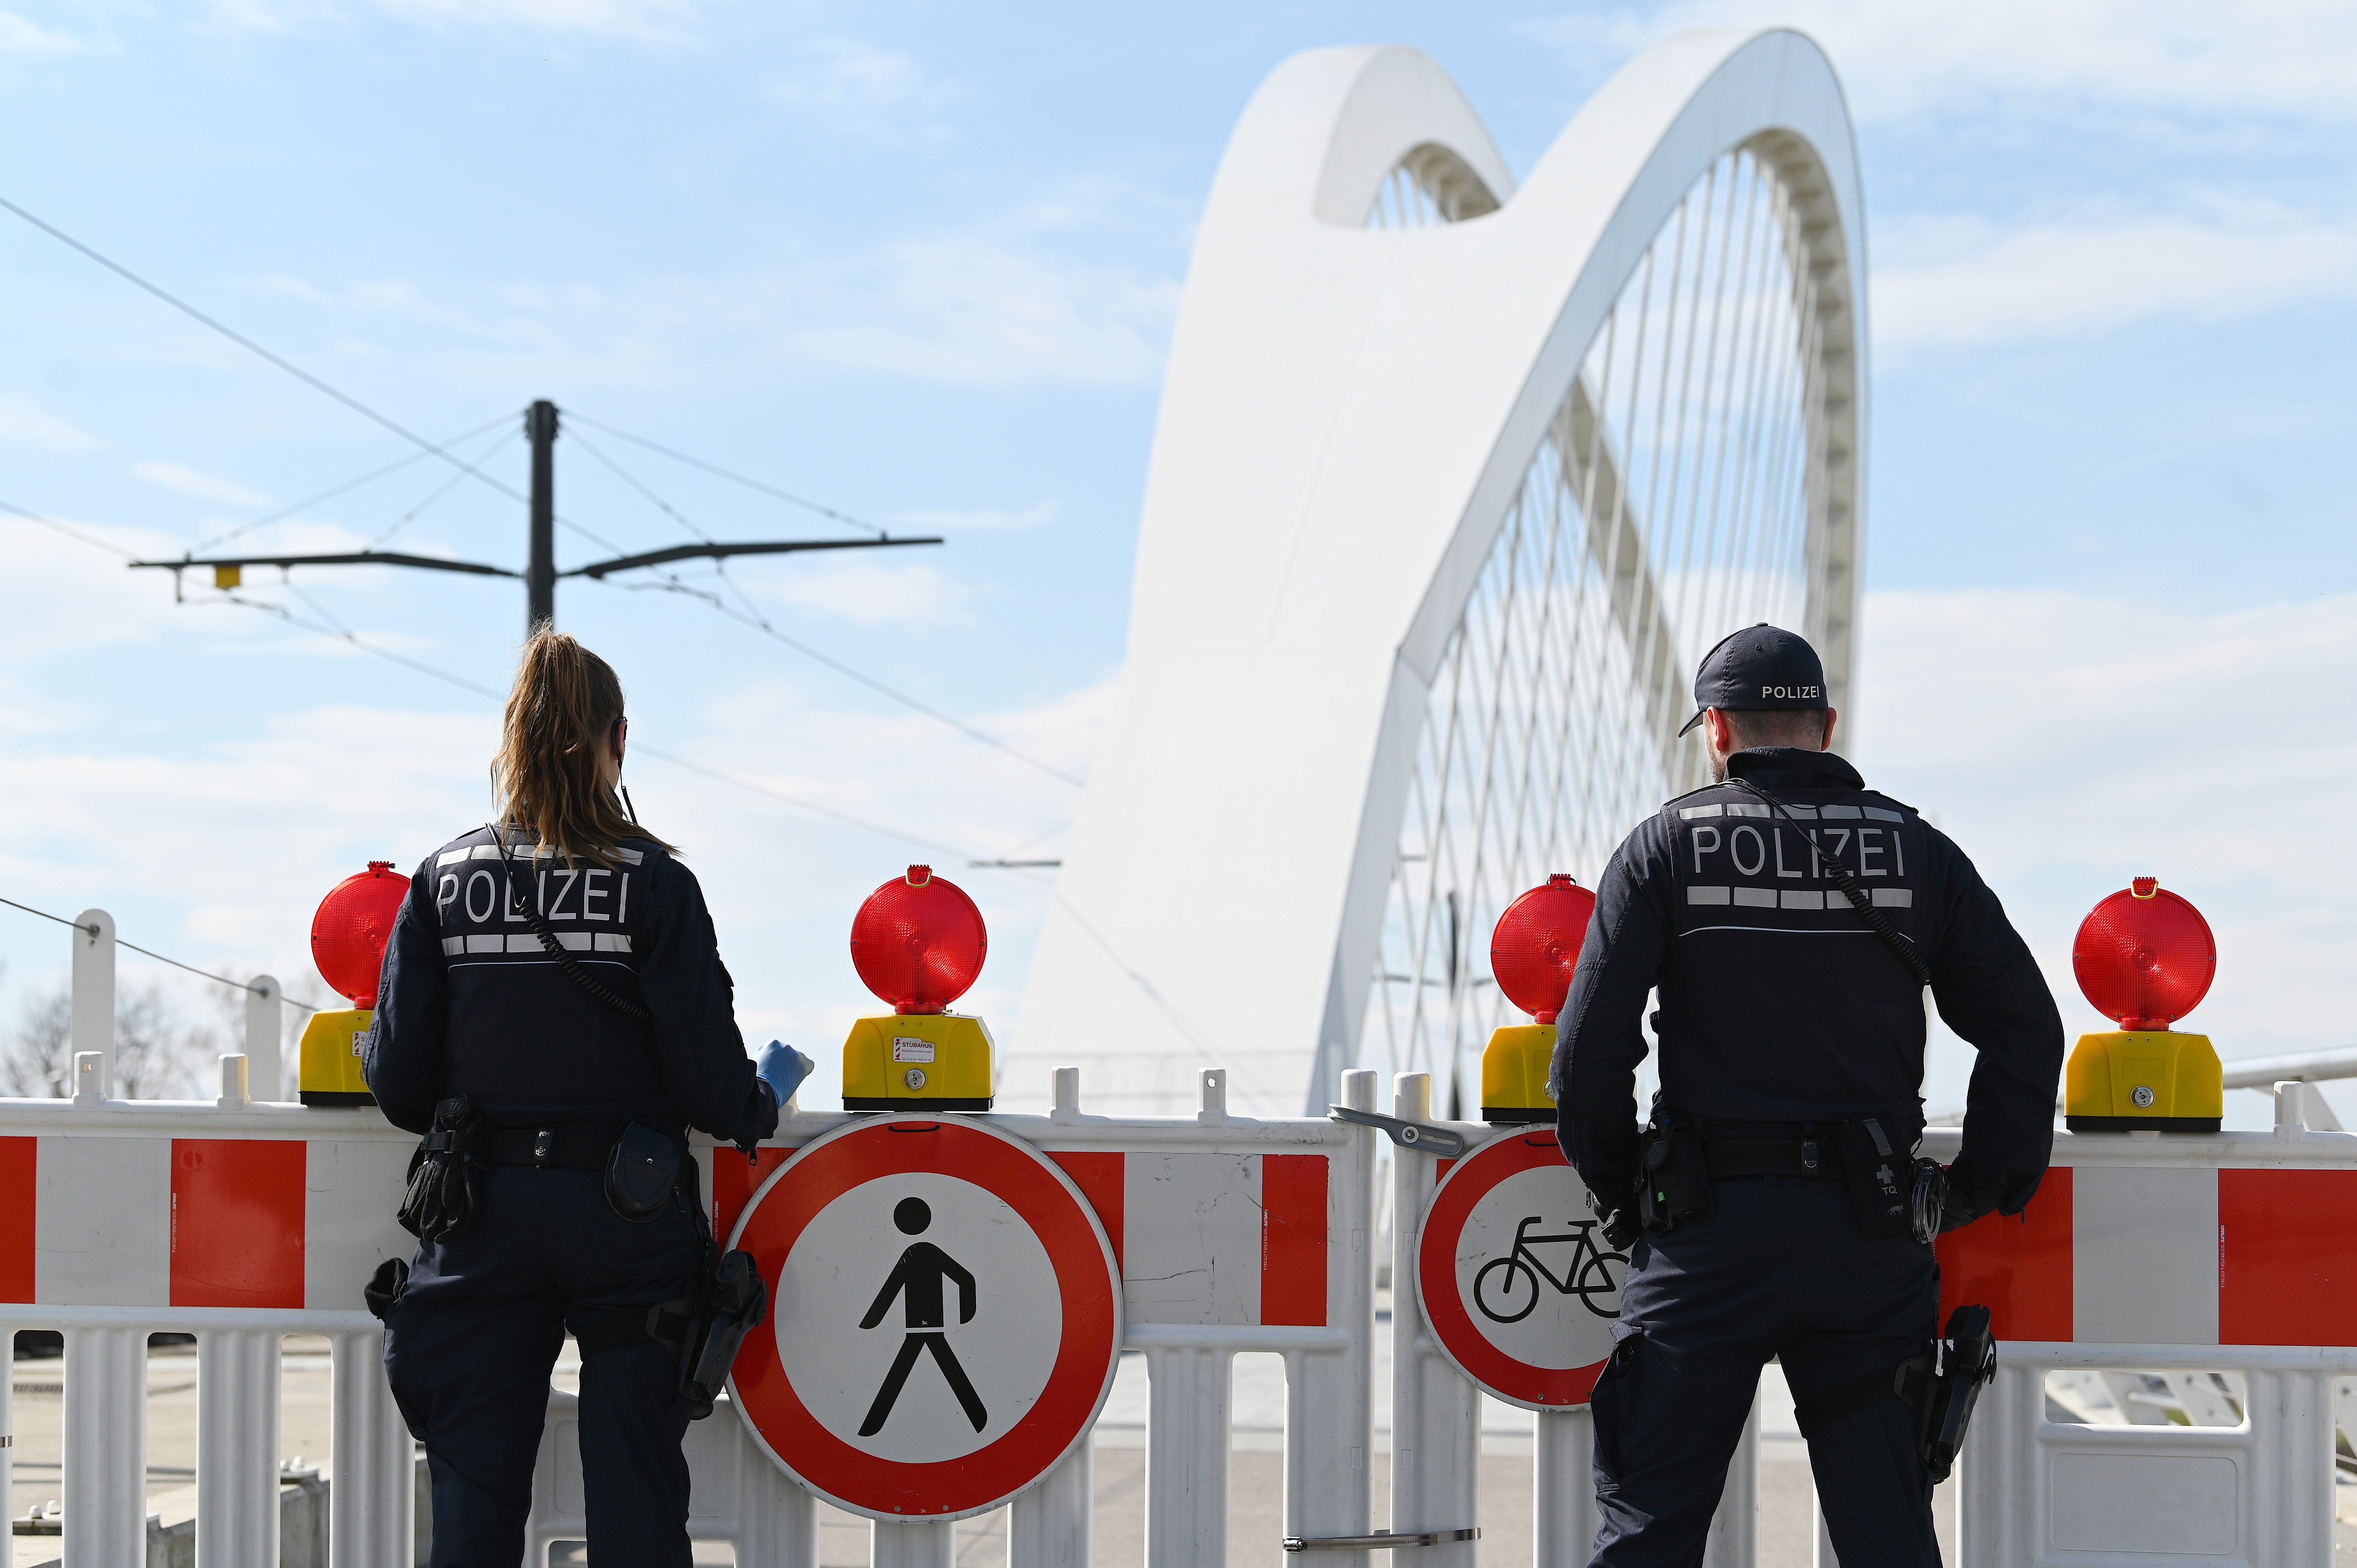 Alemania disuelve una unidad especial de policía por compartir contenidos ultras